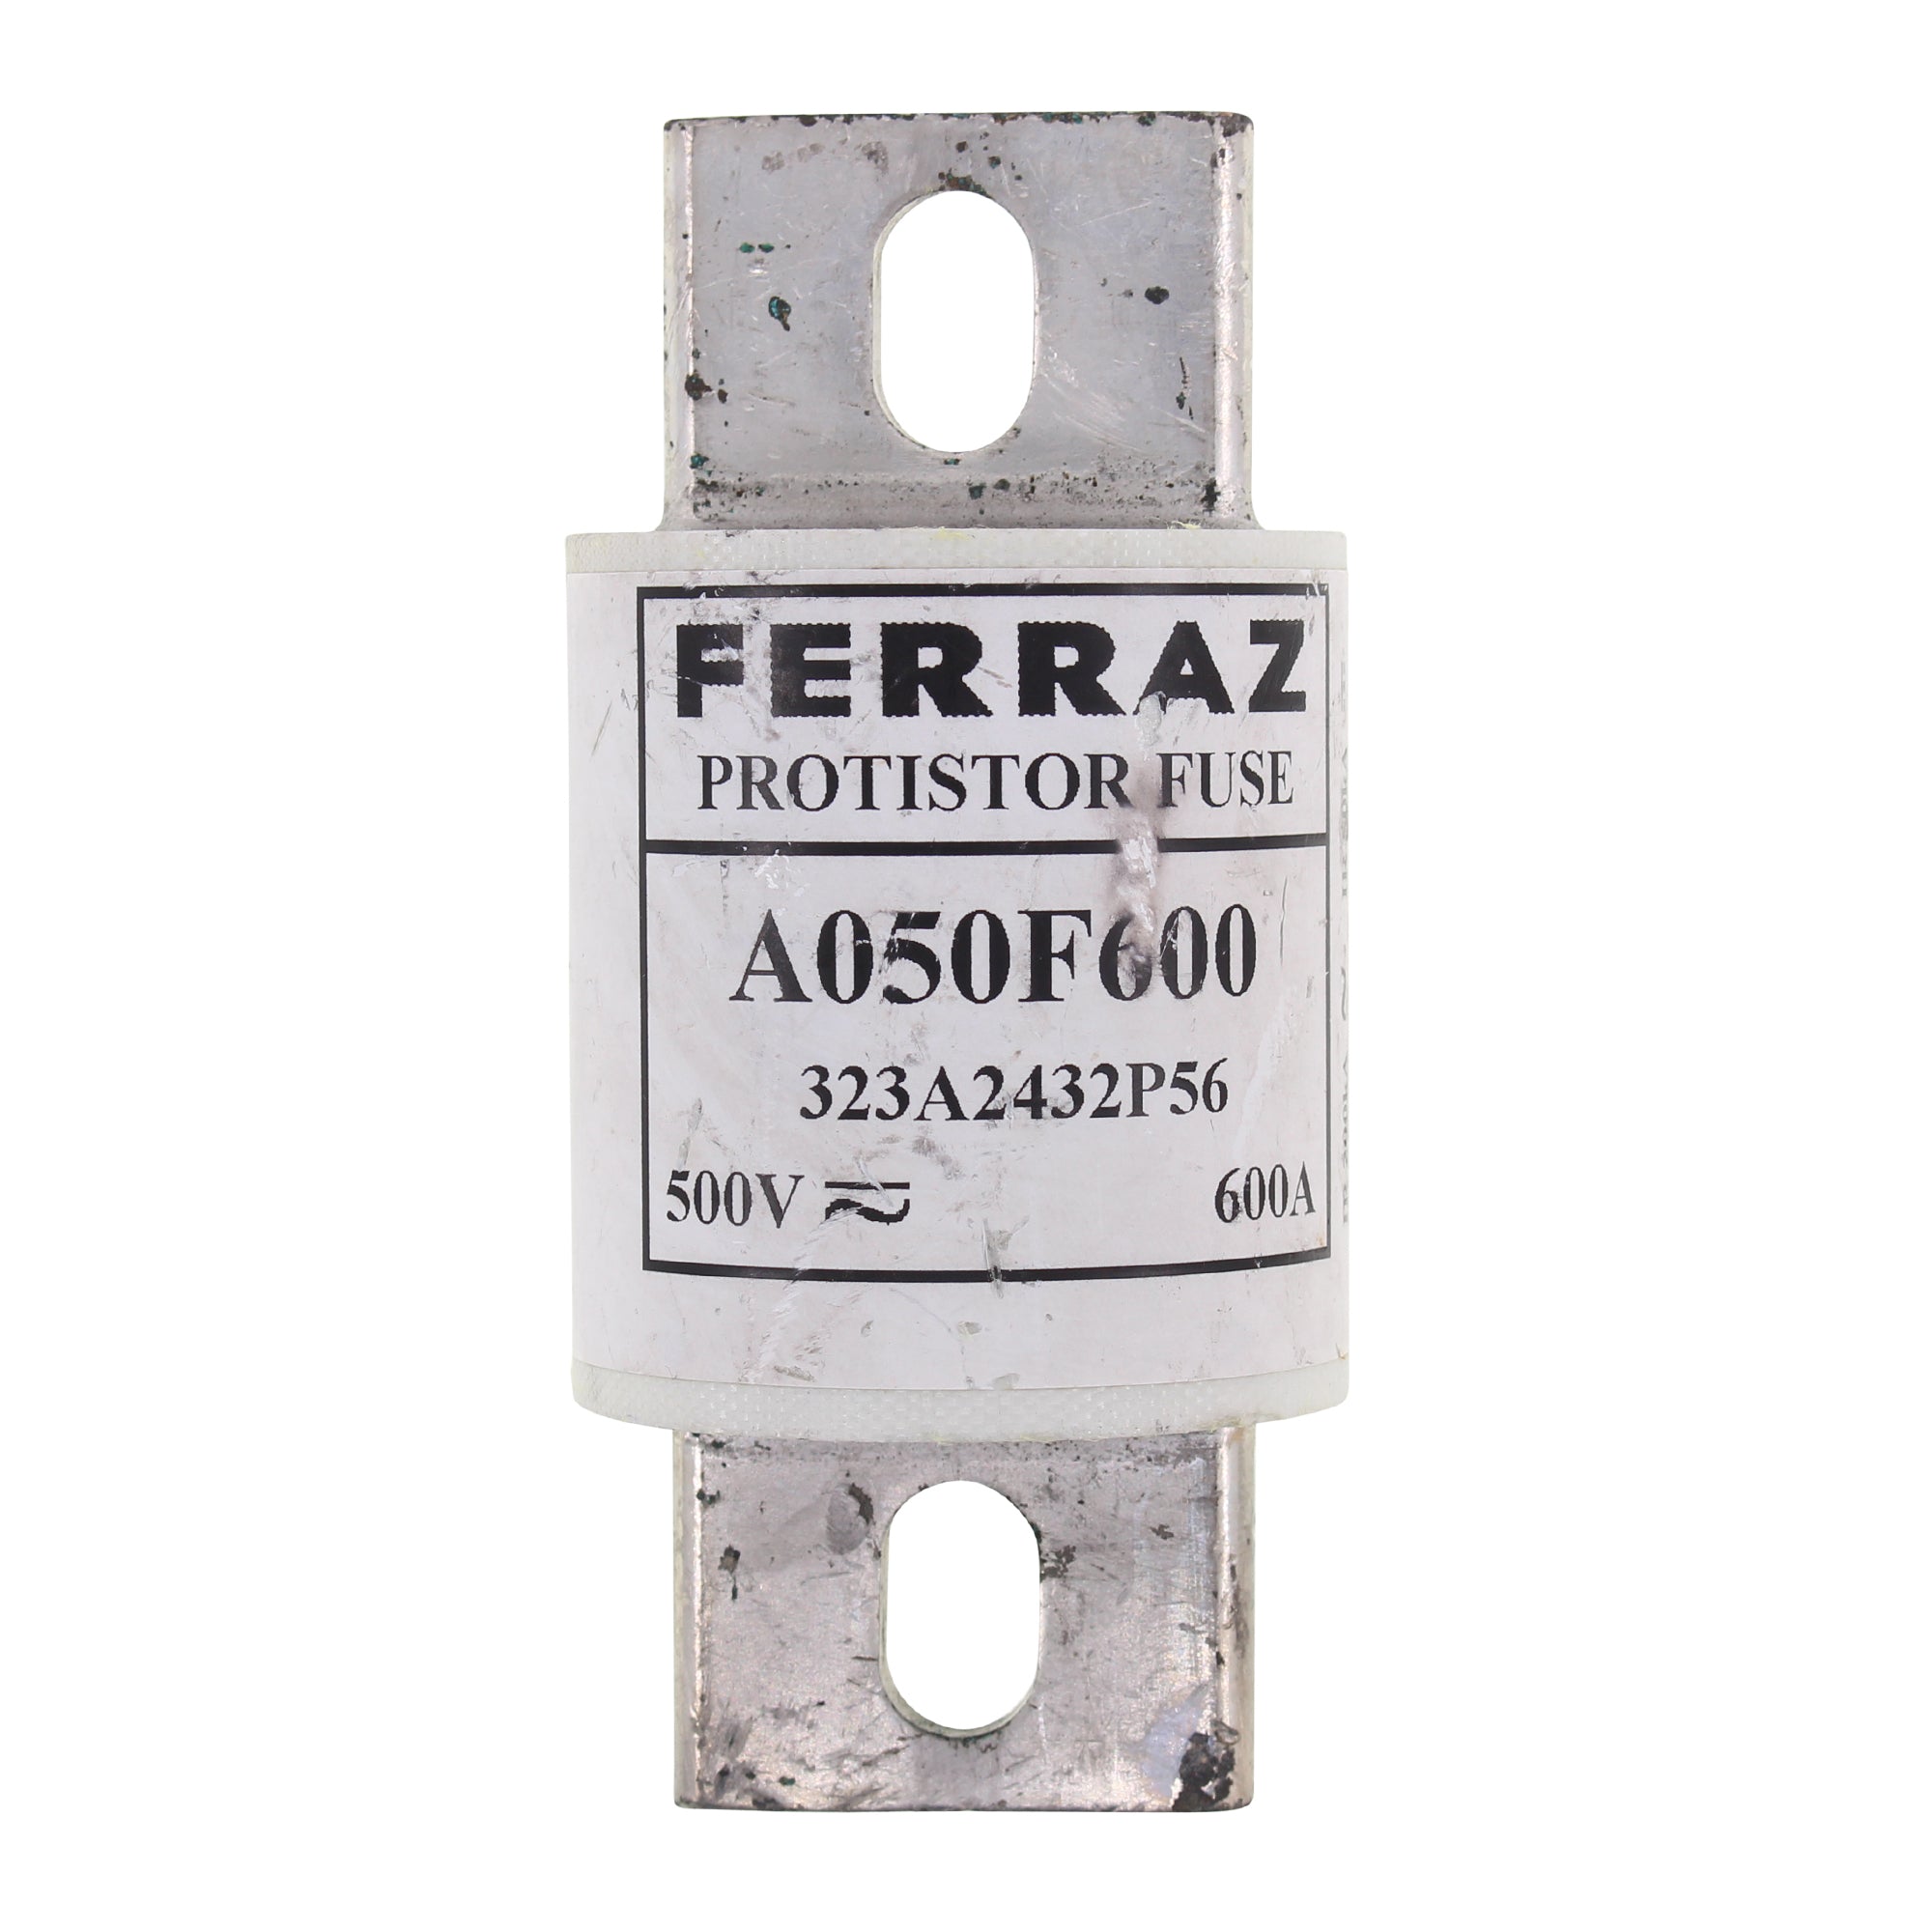 Ferraz Shawmut, FERRAZ-SHAWMUT A050F600 SEMICONDUCTOR FUSE, FORM 101, 600-AMP, 500V